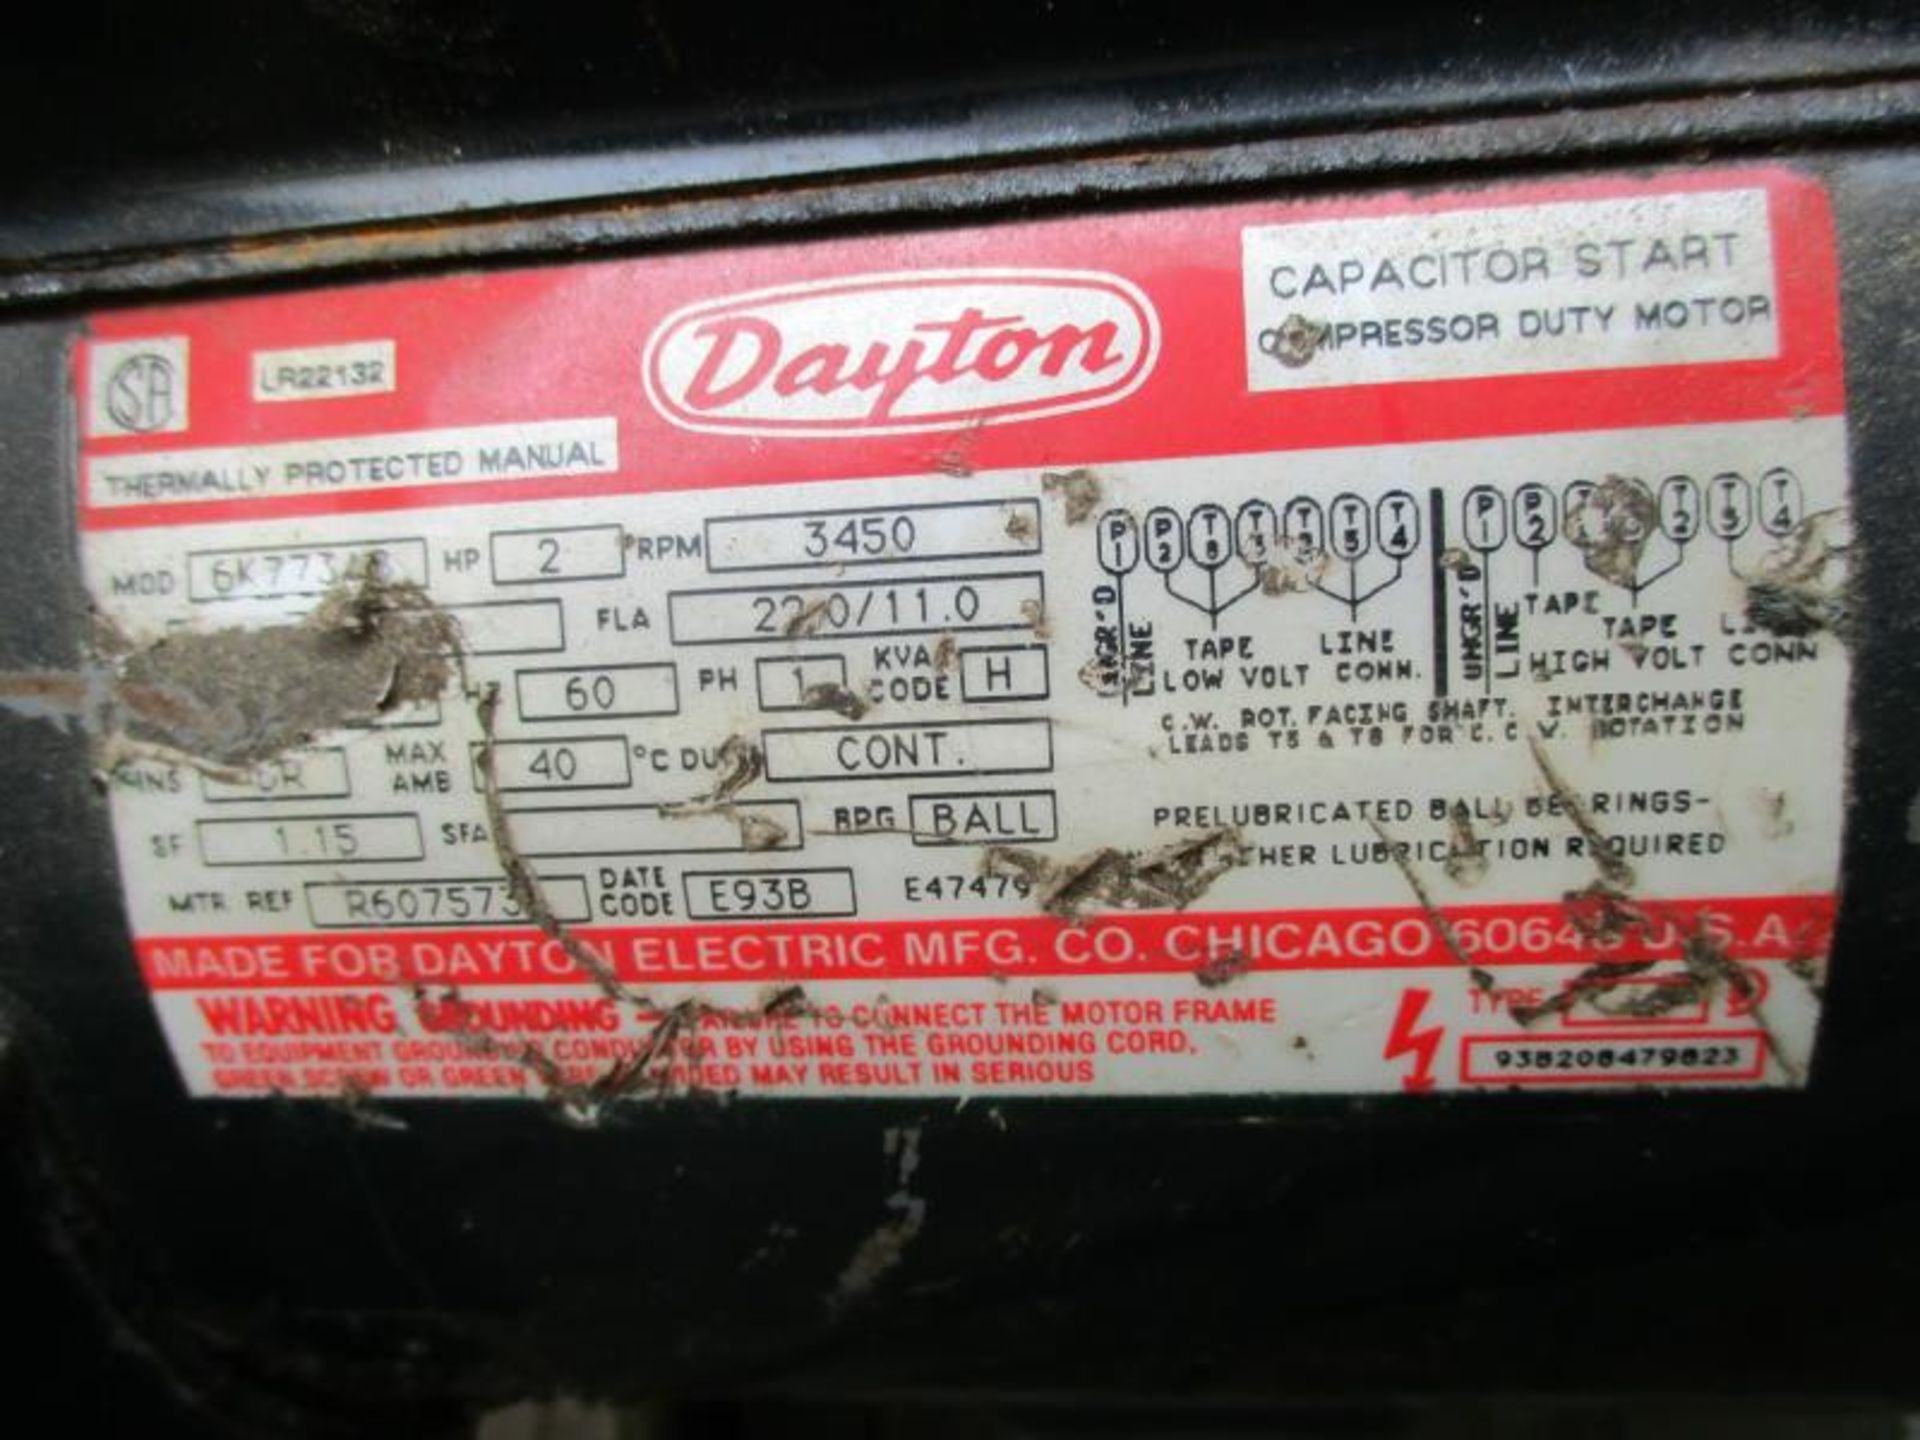 Metal Cutting Saw, 2 HP Motor, By Dayton - Image 6 of 7